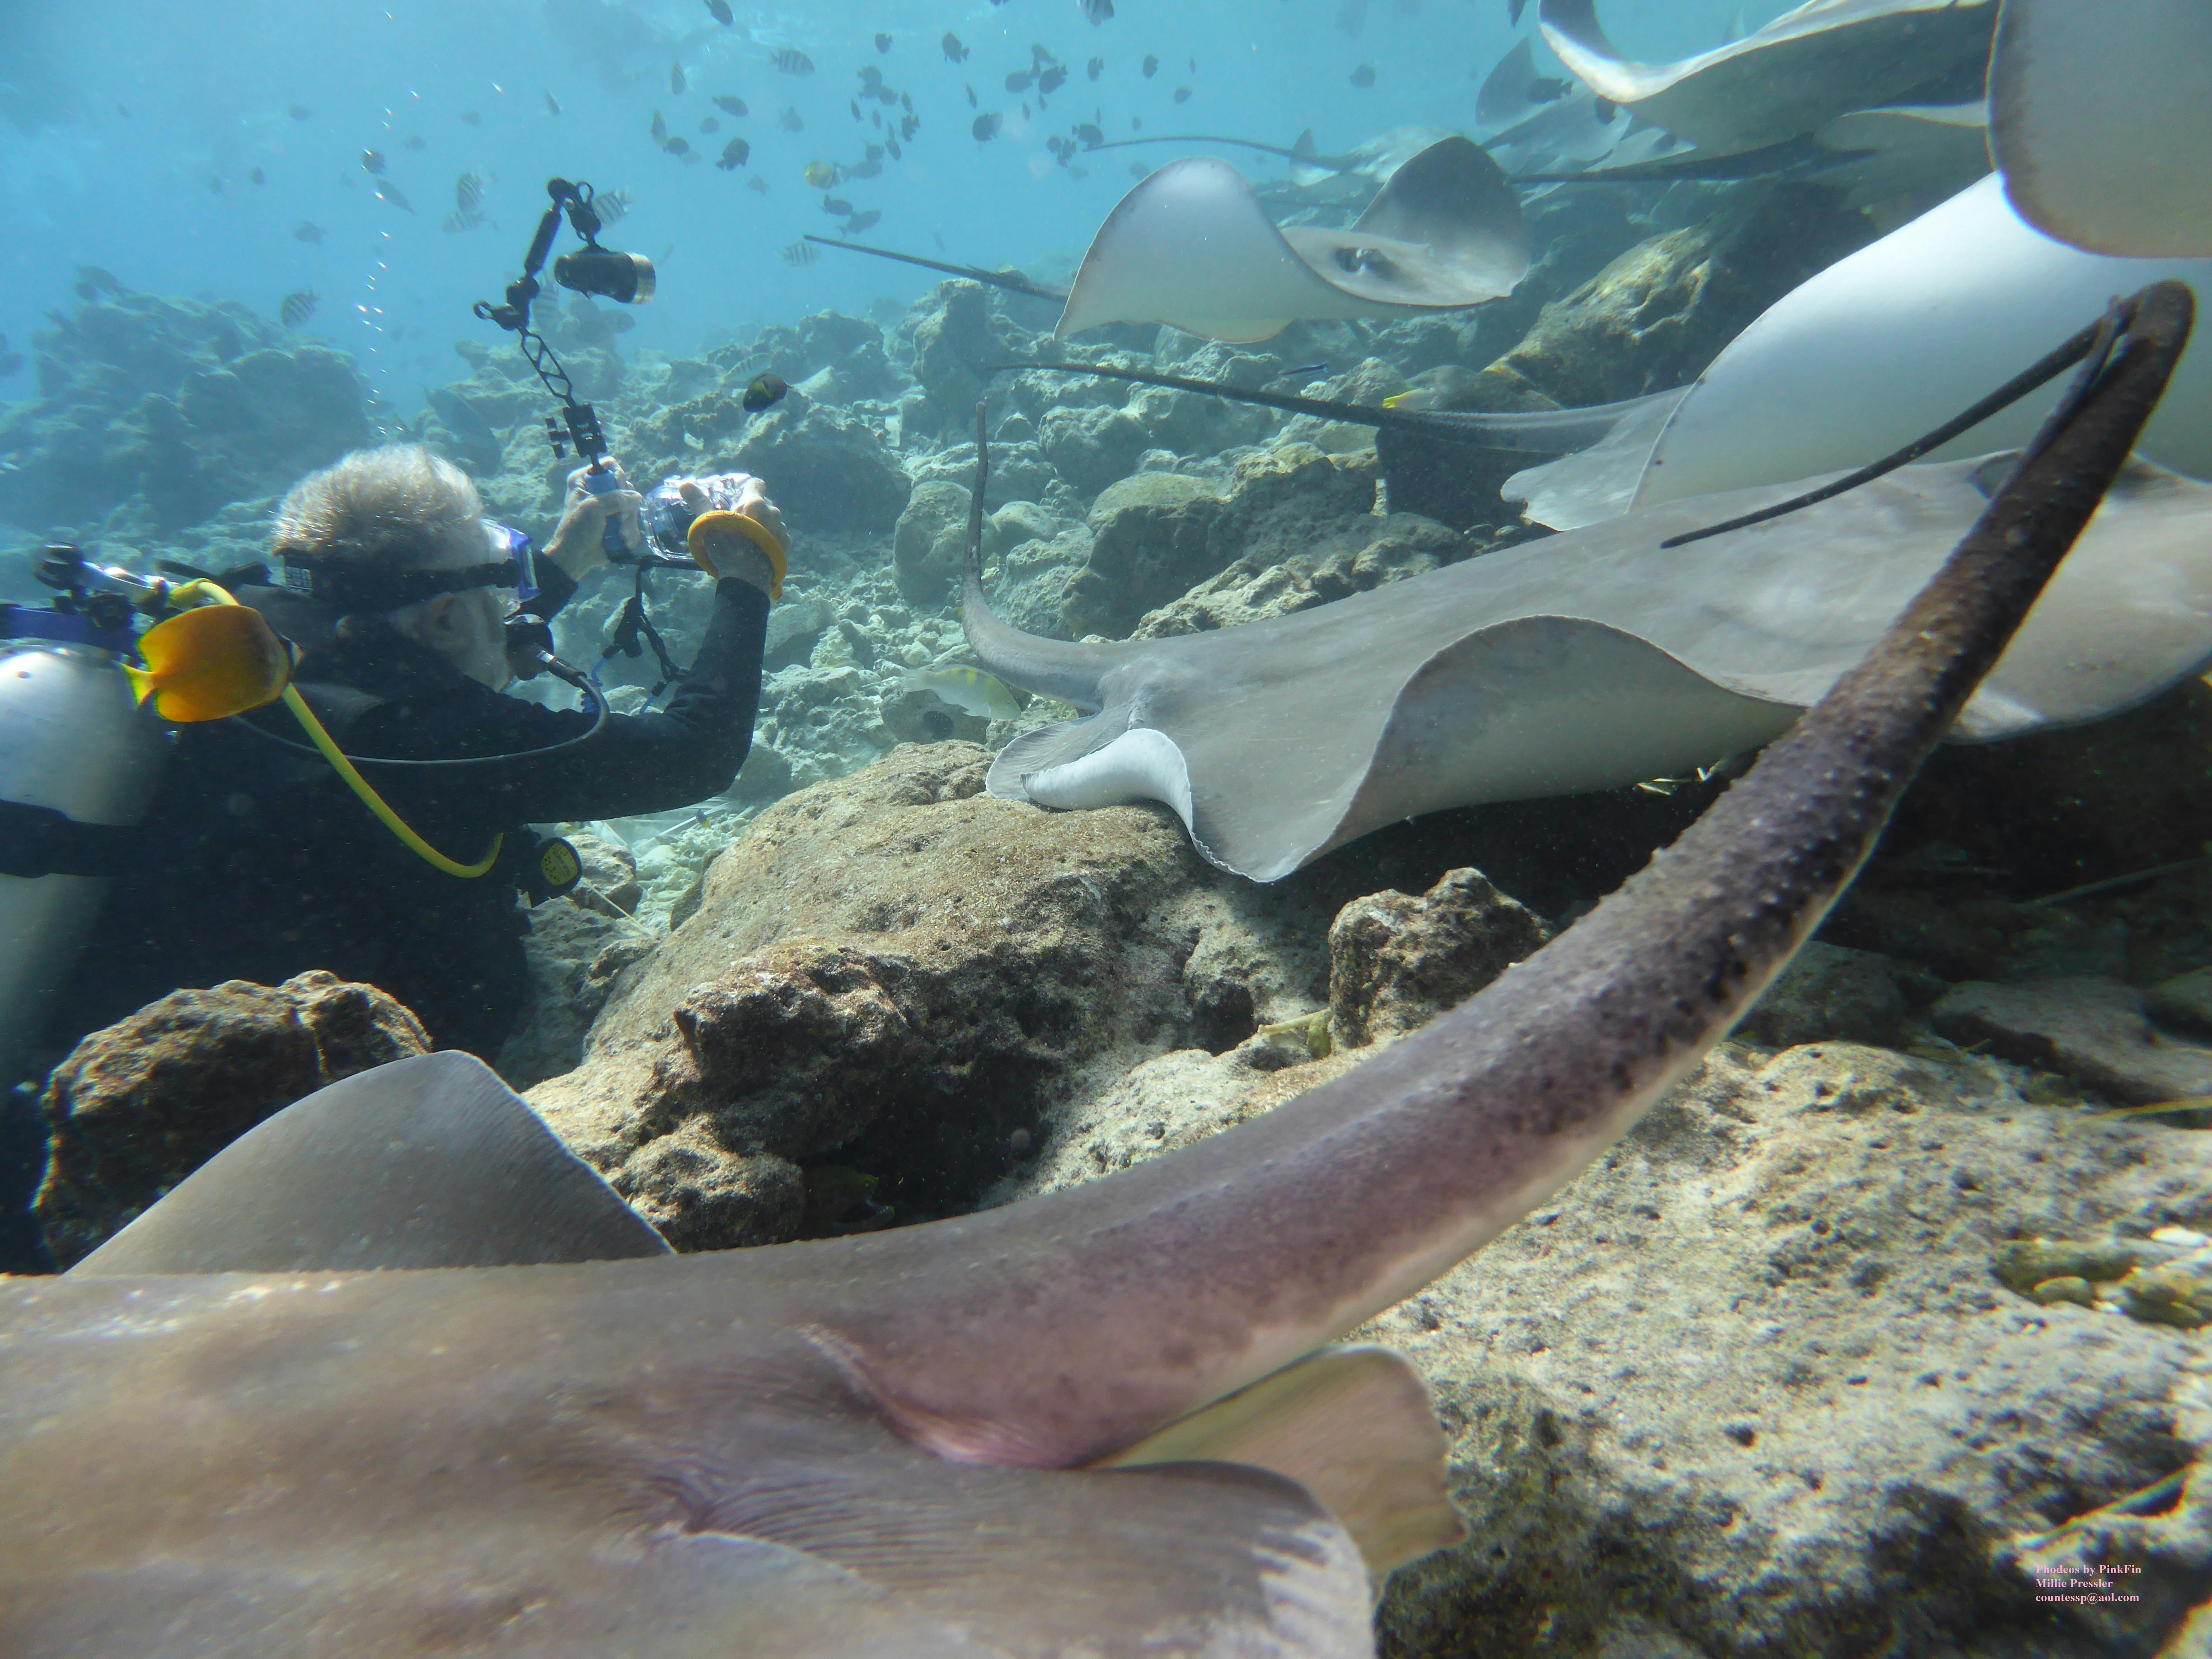 Free stock photo of Costa cruises, Fish tank dive site maldives, maldives